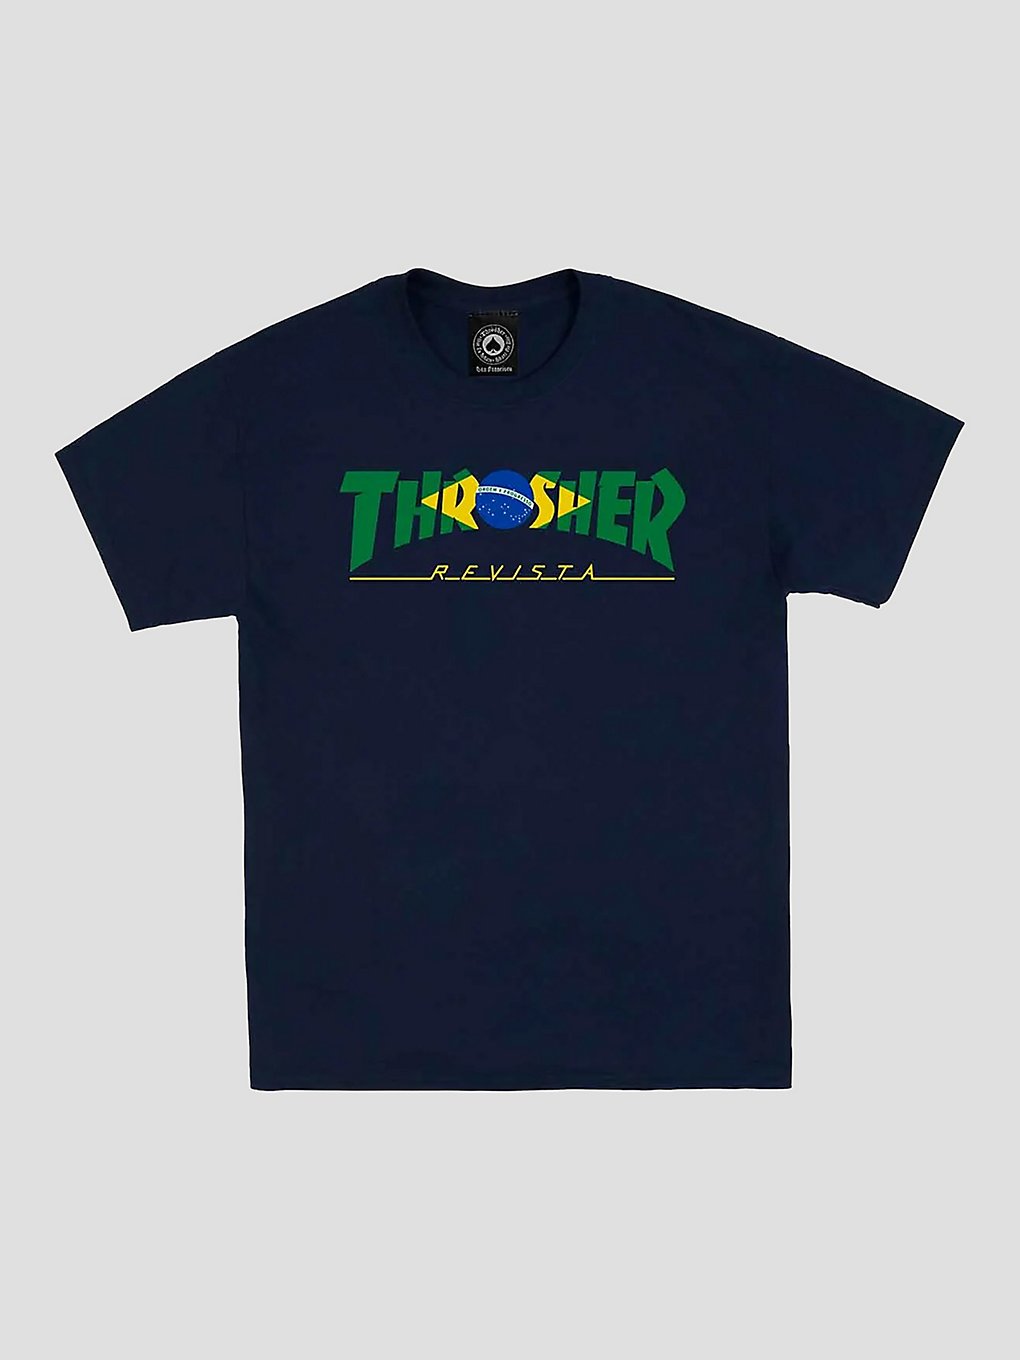 Thrasher Brazil Revista T-Shirt navy kaufen